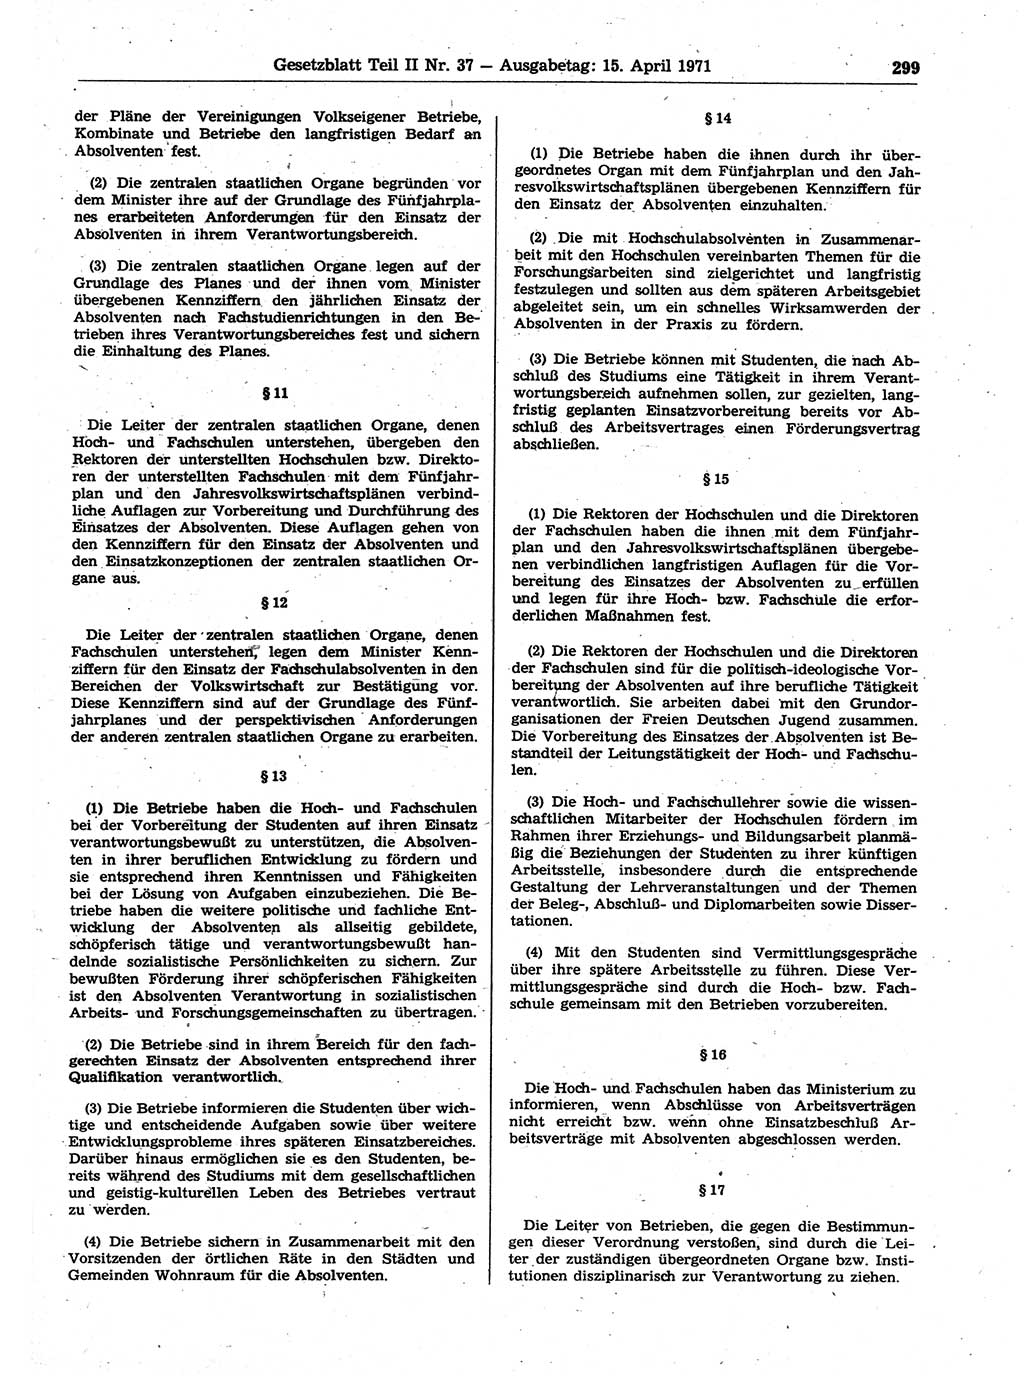 Gesetzblatt (GBl.) der Deutschen Demokratischen Republik (DDR) Teil ⅠⅠ 1971, Seite 299 (GBl. DDR ⅠⅠ 1971, S. 299)